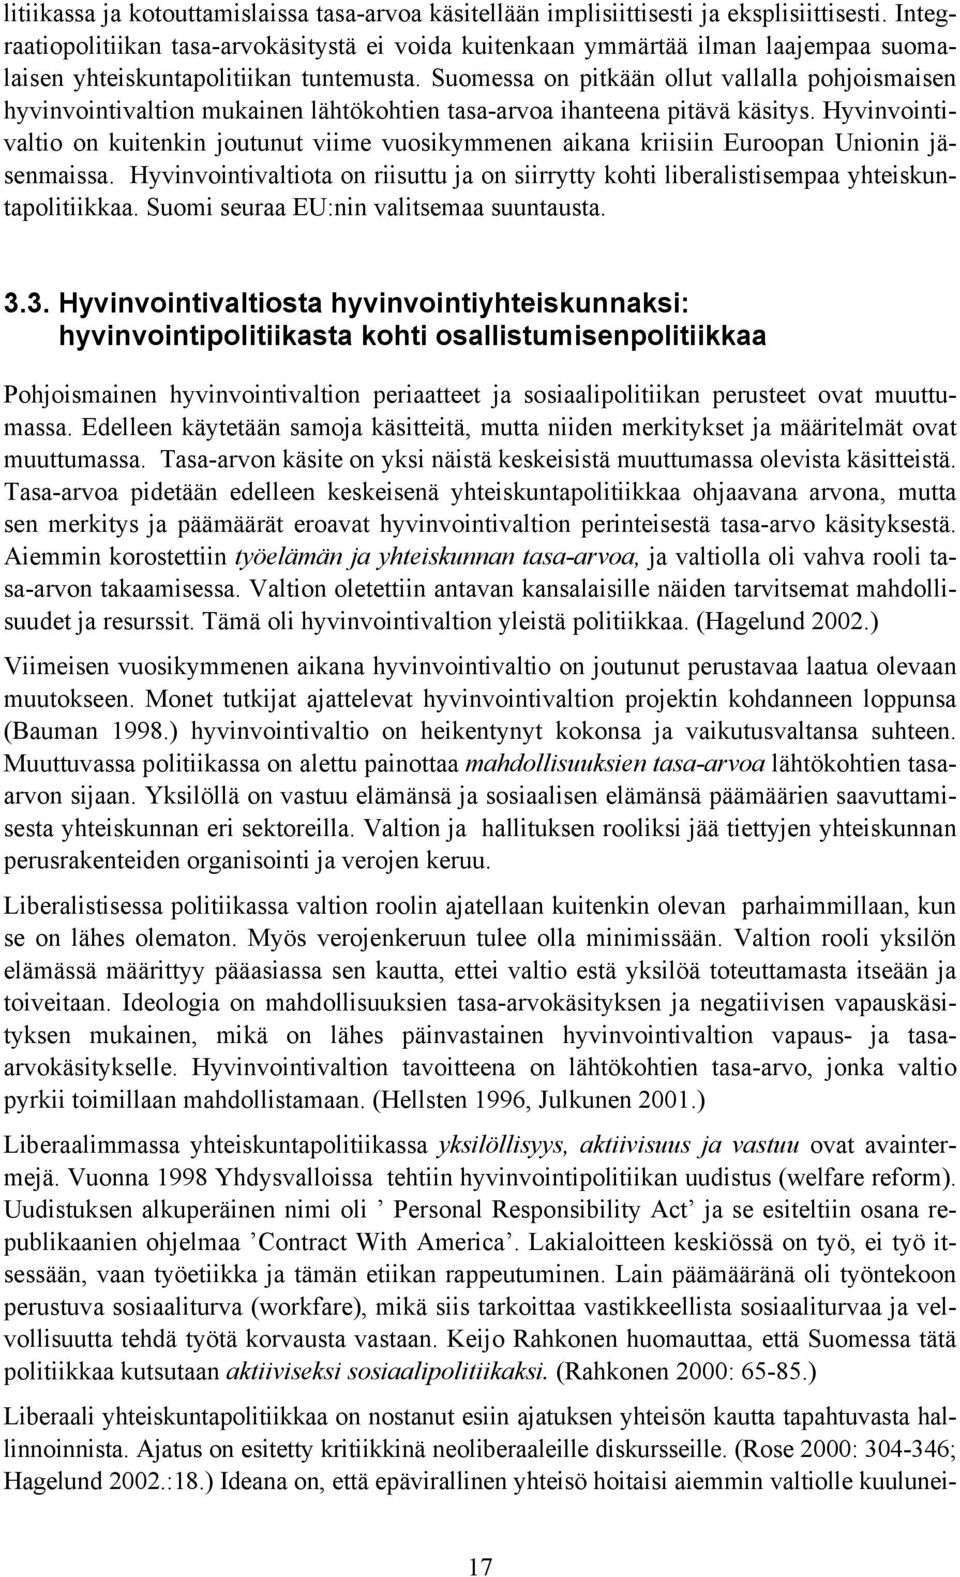 Suomessa on pitkään ollut vallalla pohjoismaisen hyvinvointivaltion mukainen lähtökohtien tasa-arvoa ihanteena pitävä käsitys.